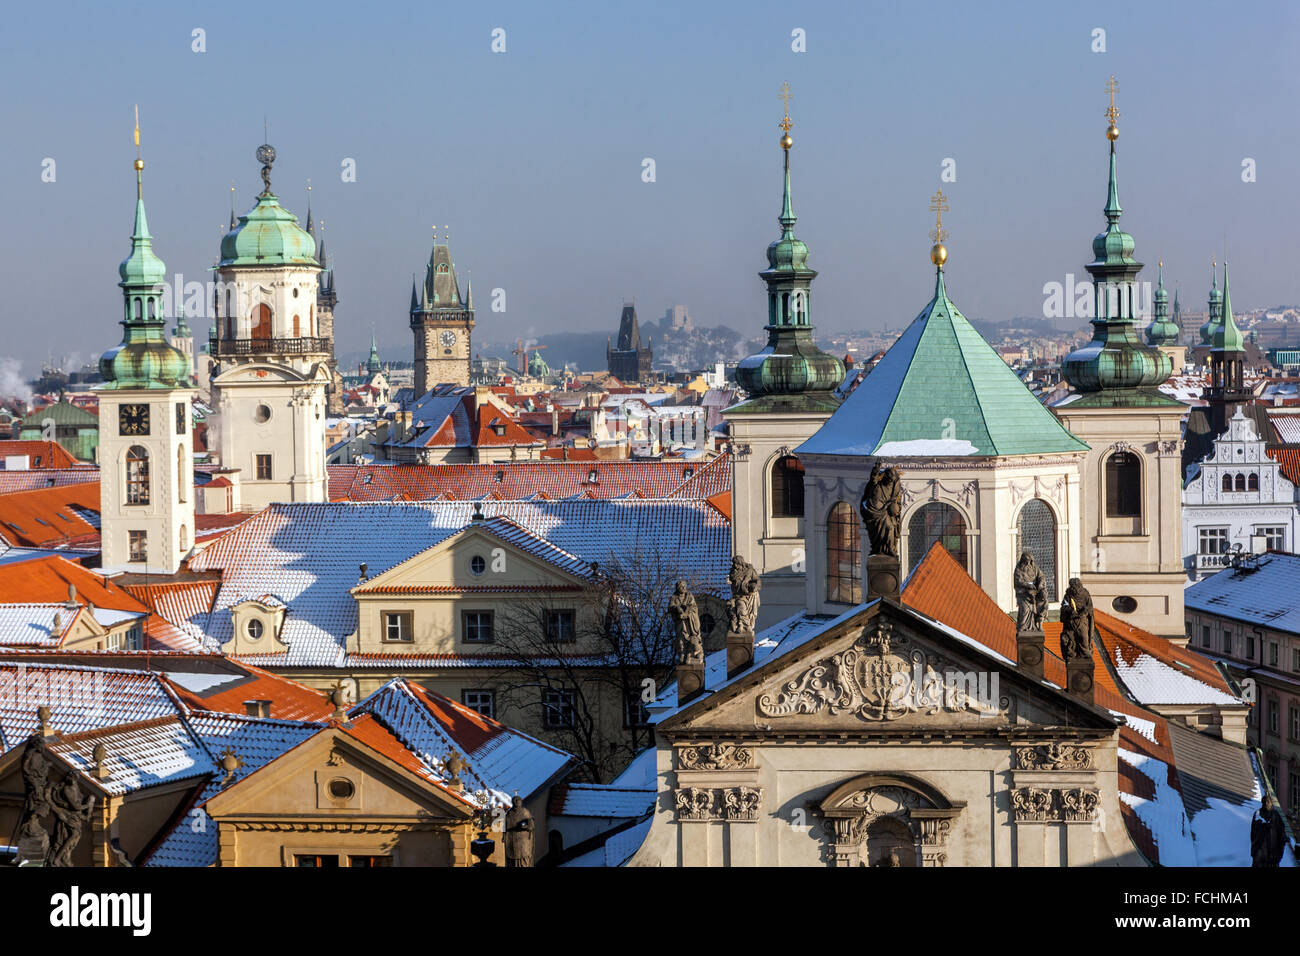 Prague ville de cent flèches, tours et toits de la vieille ville, St. Église Salvator et Clementinum, Prague, République tchèque Banque D'Images